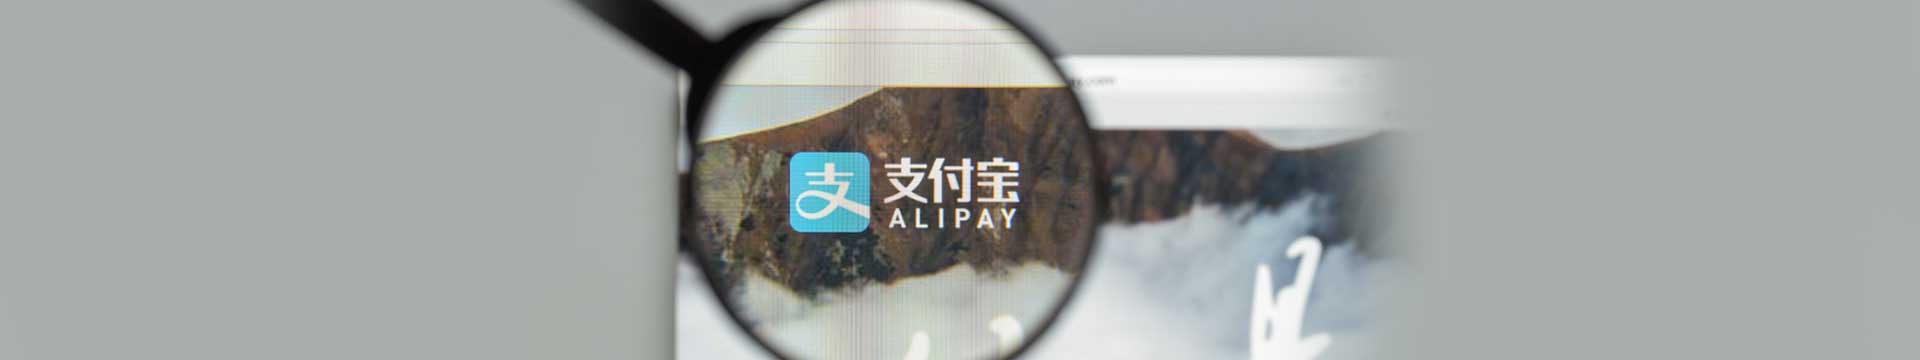 แกะรอย Business Model ของ Alipay